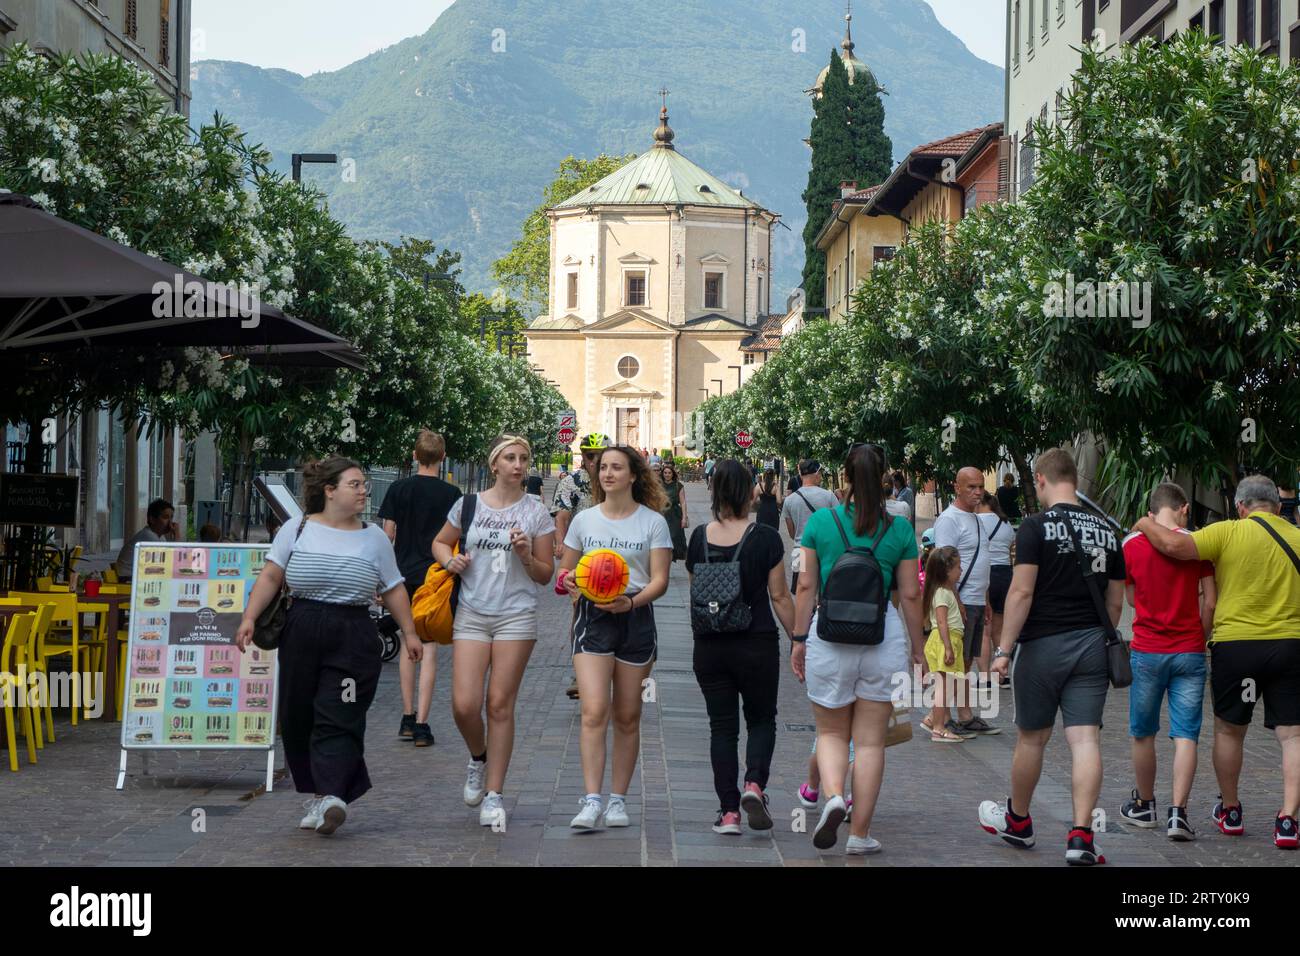 Stret Activity, Riva, Riva del Garda, province of Trento of the Trentino Alto Adige region, Italy Stock Photo